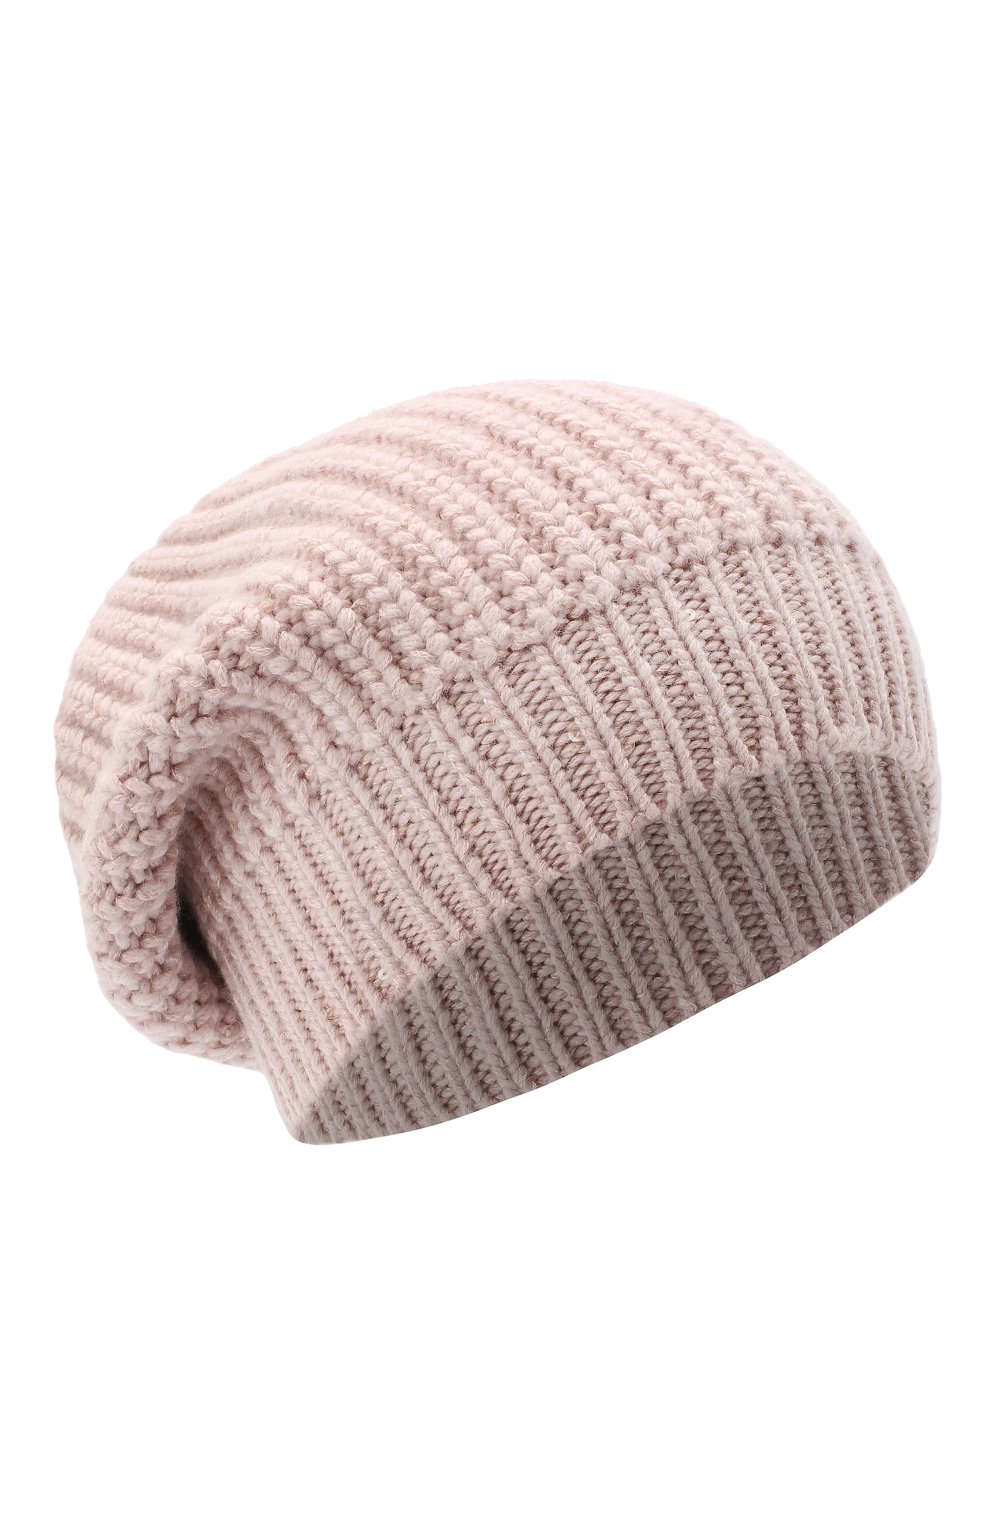 Женская кашемировая шапка BRUNELLO CUCINELLI розового цвета, арт. M32373999P | Фото 1 (Материал: Текстиль, Кашемир, Шерсть)